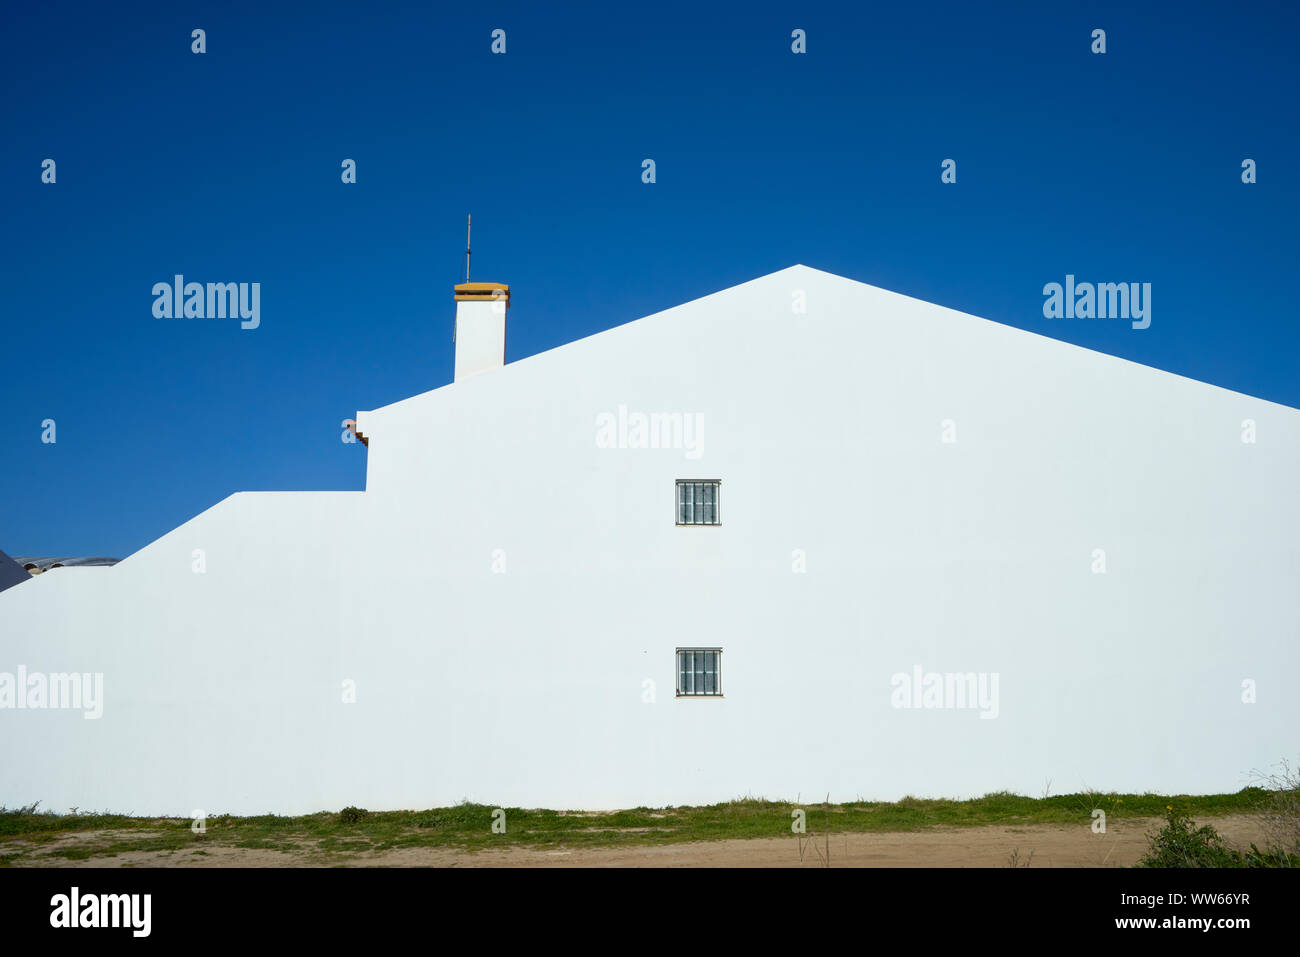 Mur d'une maison blanche avec fenêtre, cheminée et ciel bleu Banque D'Images